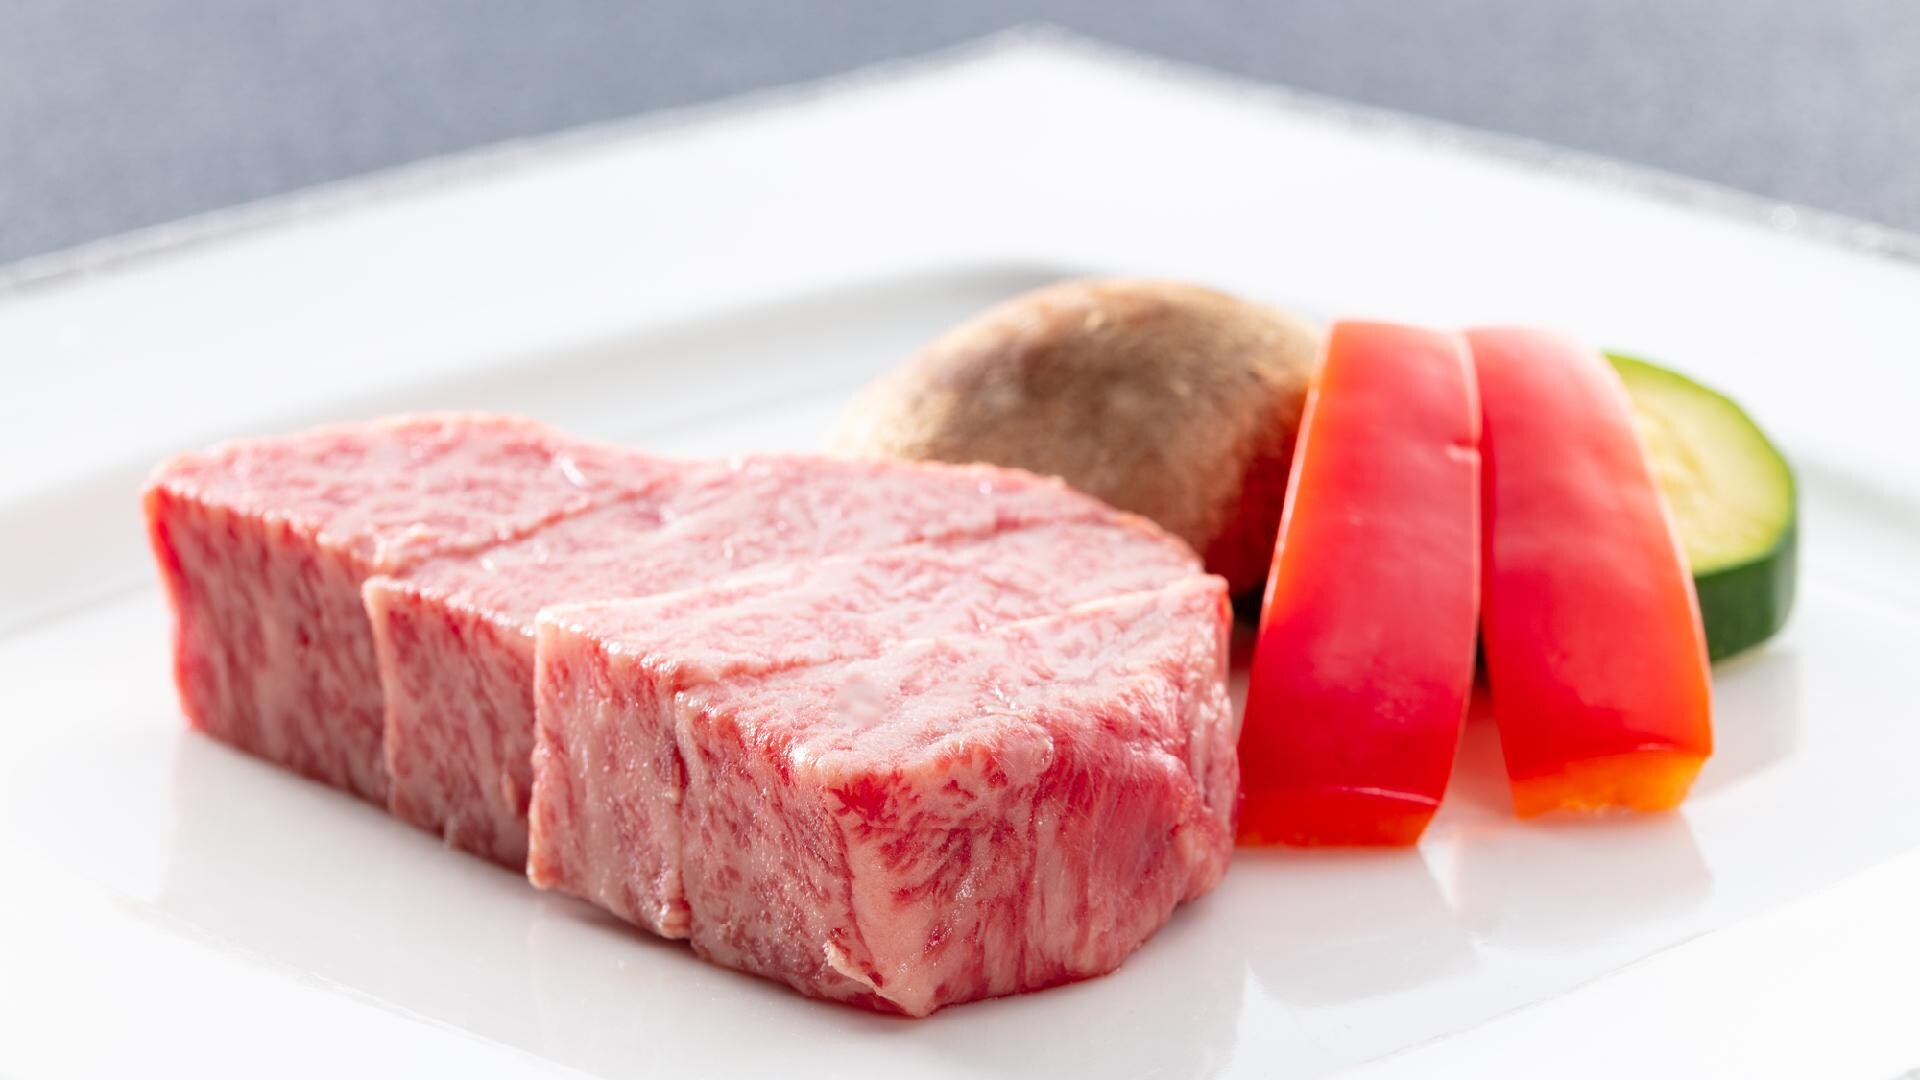 Image of Shinshu beef steak